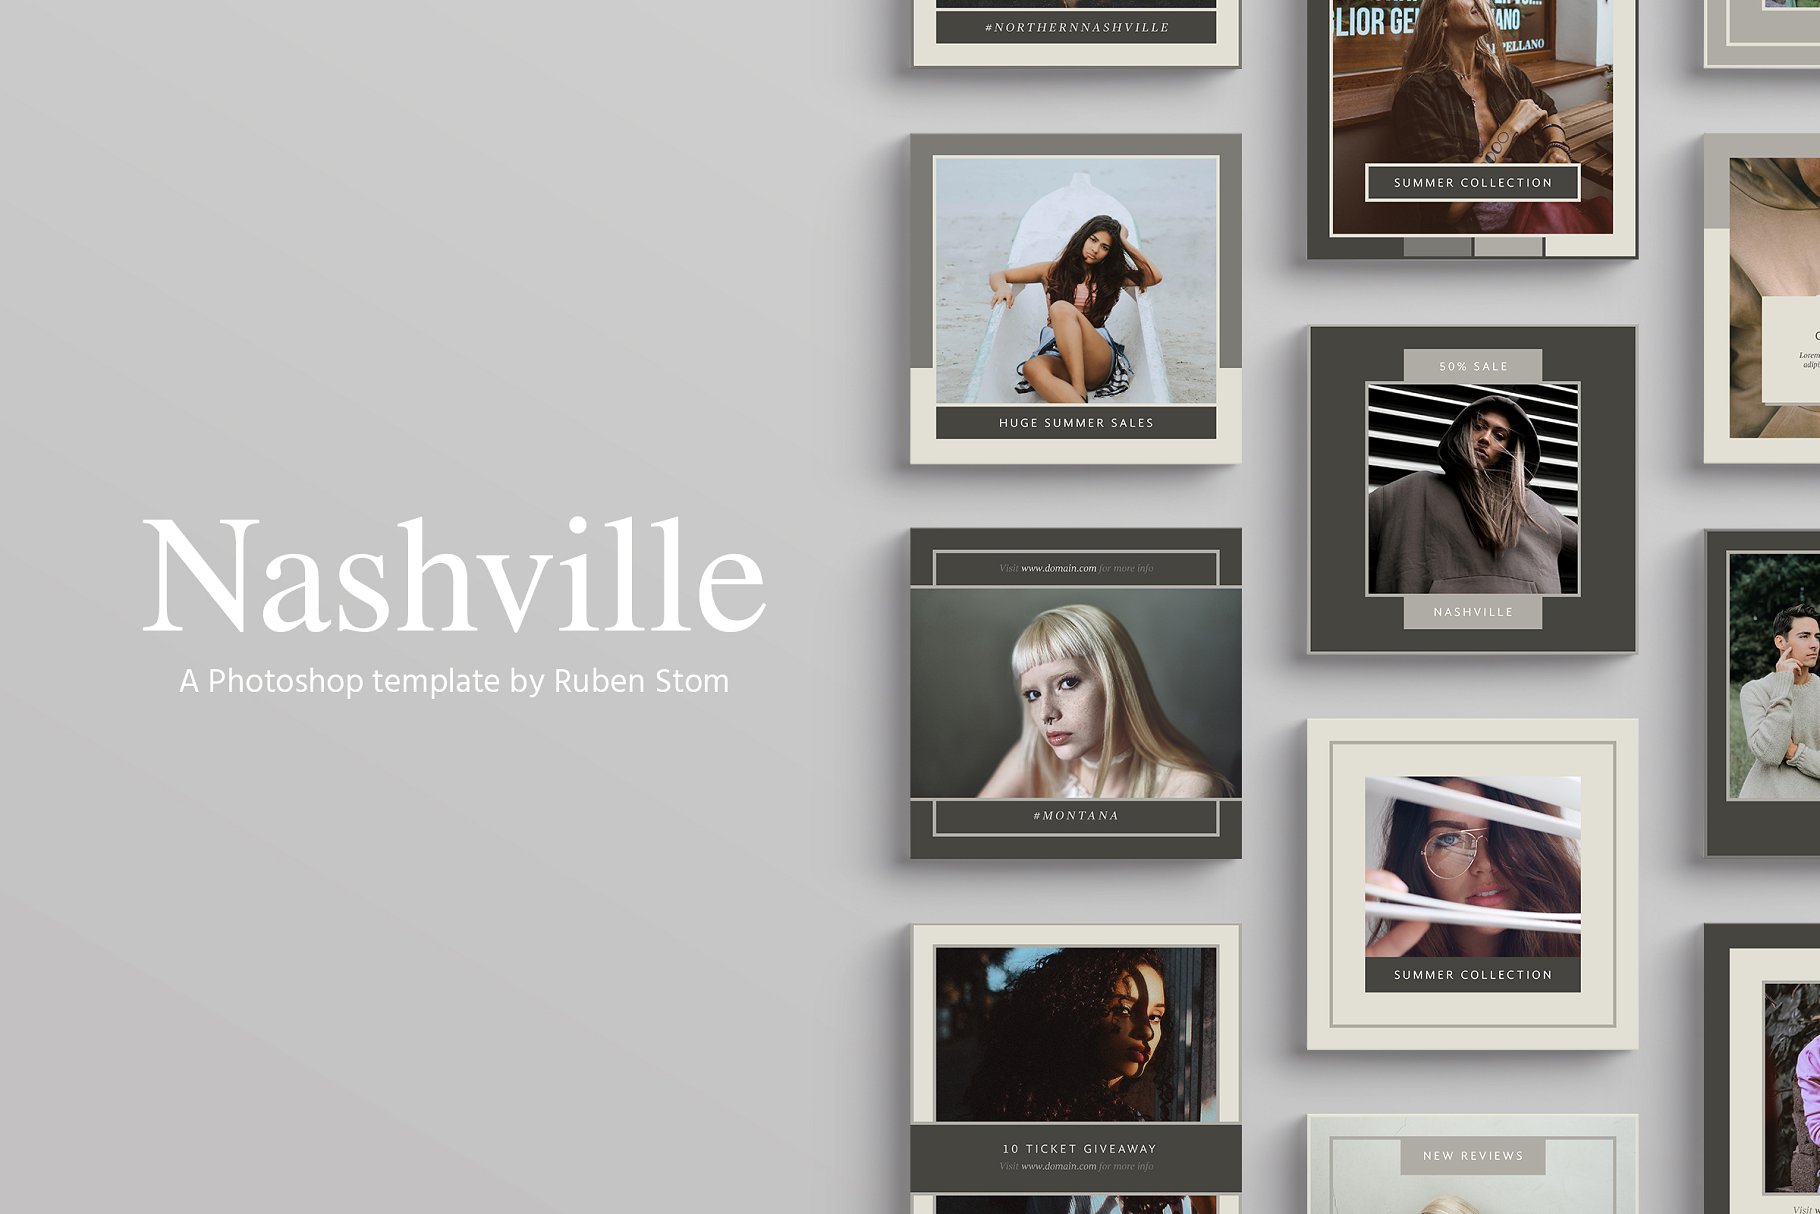 时尚模特摄影主题社交媒体贴图模板大洋岛精选 Nashville Social Media Templates插图